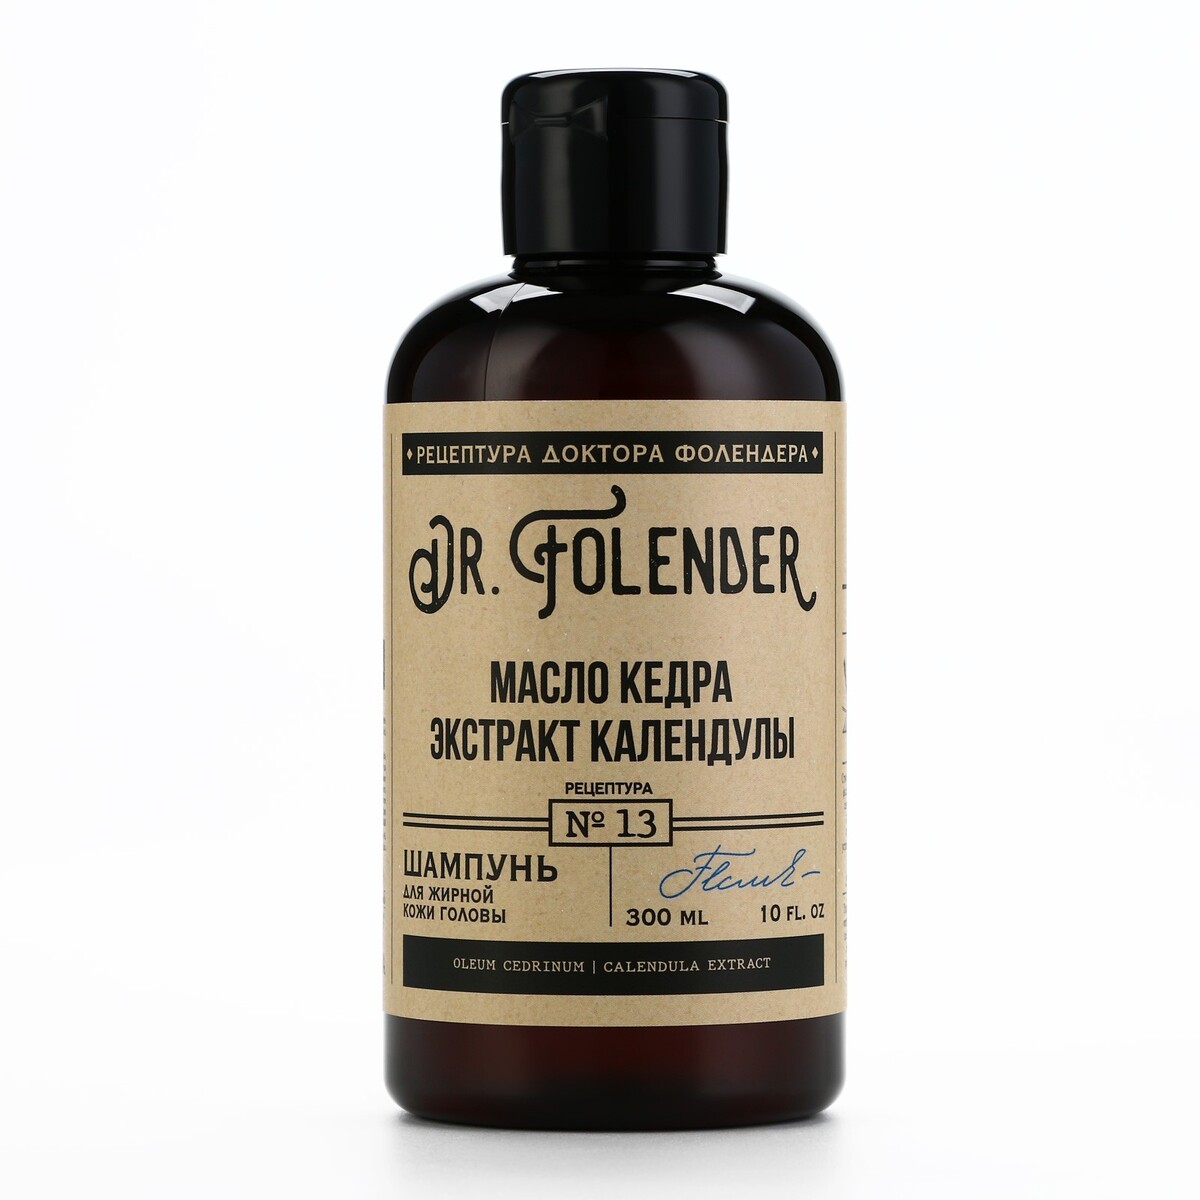 Шампунь для волос с маслом кедра и экстрактом календулы, очищение, 300 мл, dr.folender очищение тьмой